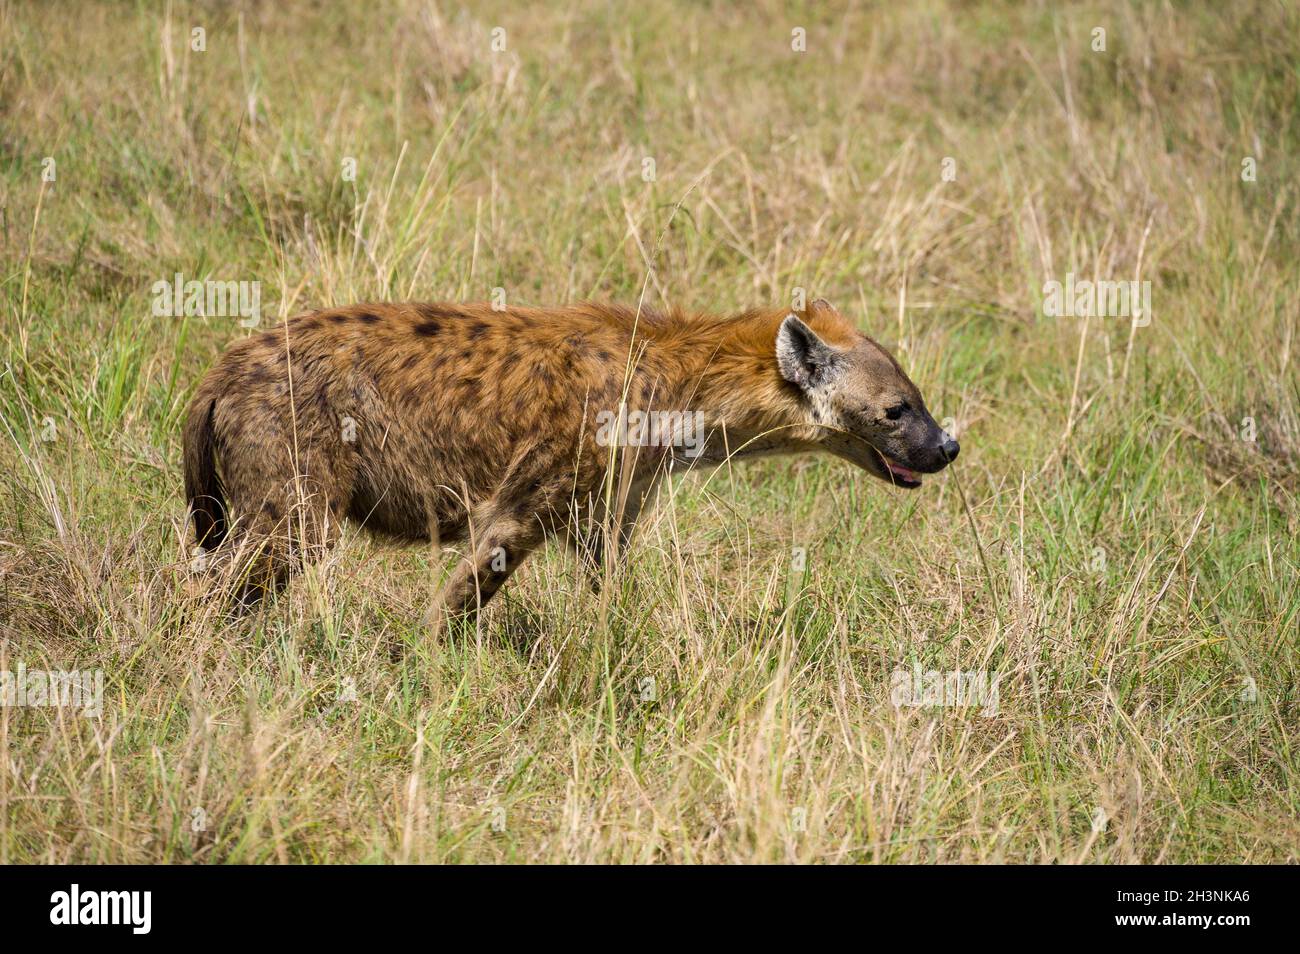 Spotted Hyena (Hyaenidae) walking in tall grass, Maasai Mara, Kenya Stock Photo